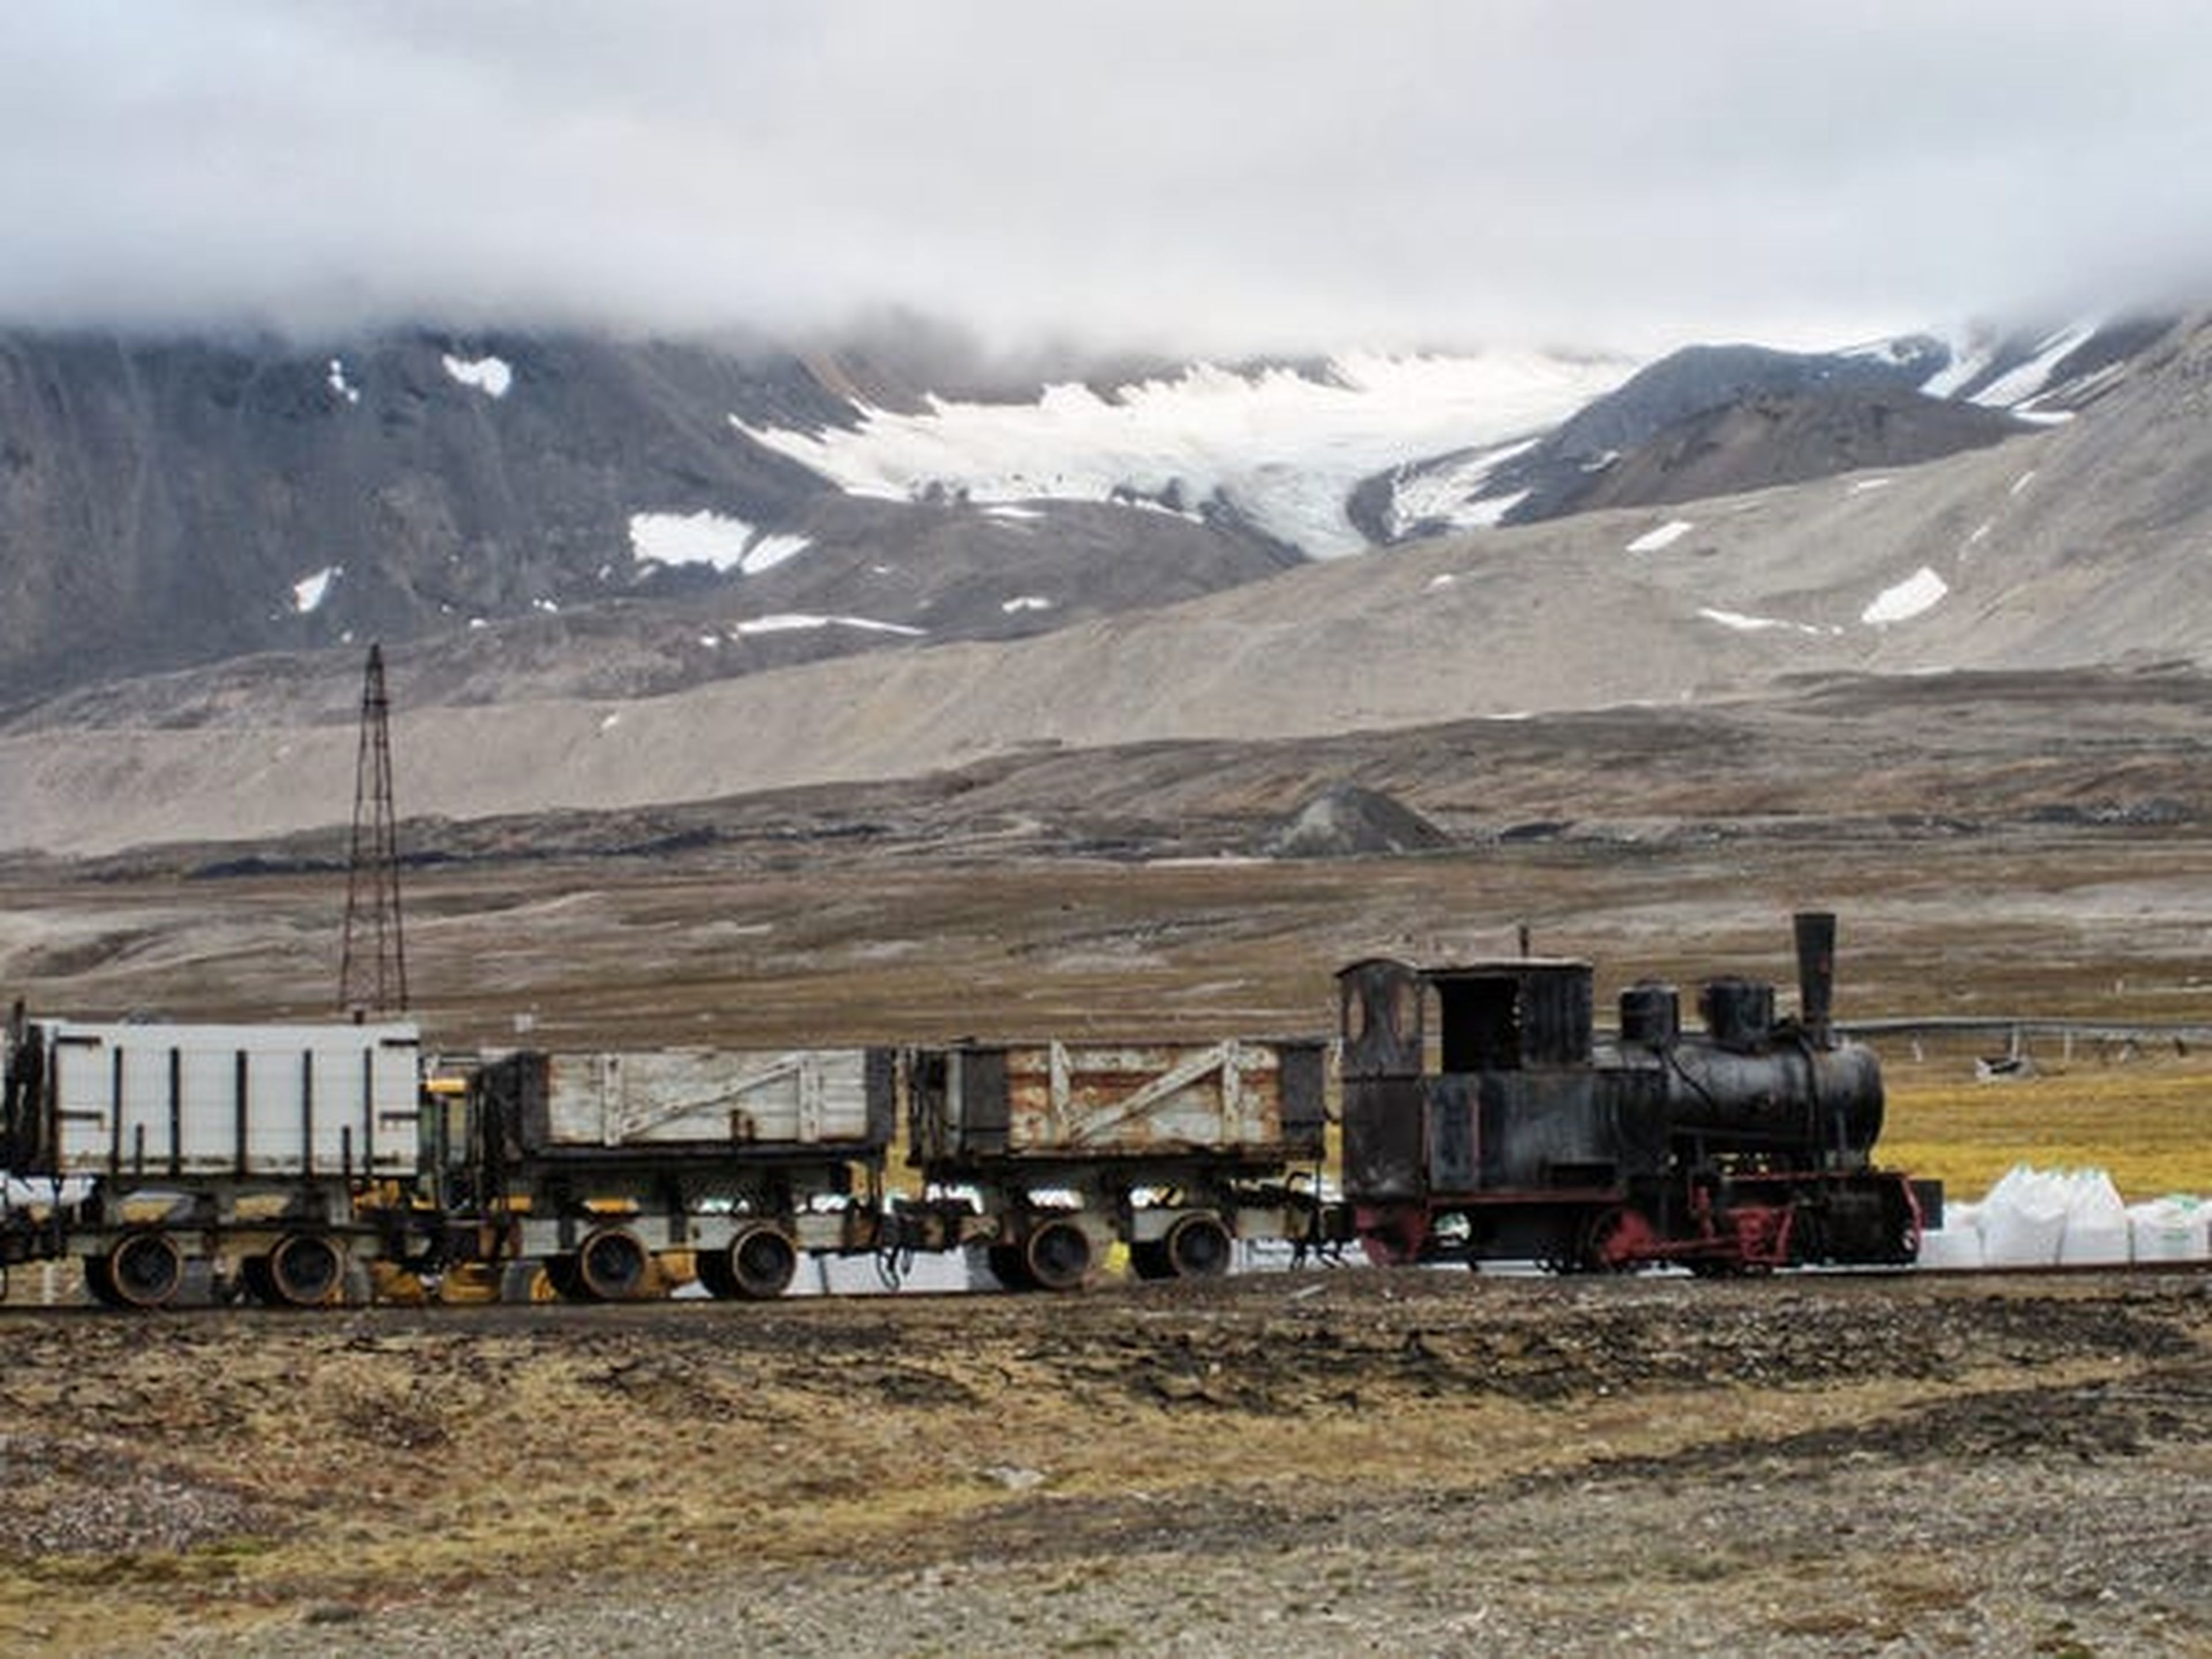 A principios del siglo XX, Longyearbyen se convirtió en una ciudad minera, aunque desde entonces las operaciones mineras se han ido eliminando progresivamente de la zona.